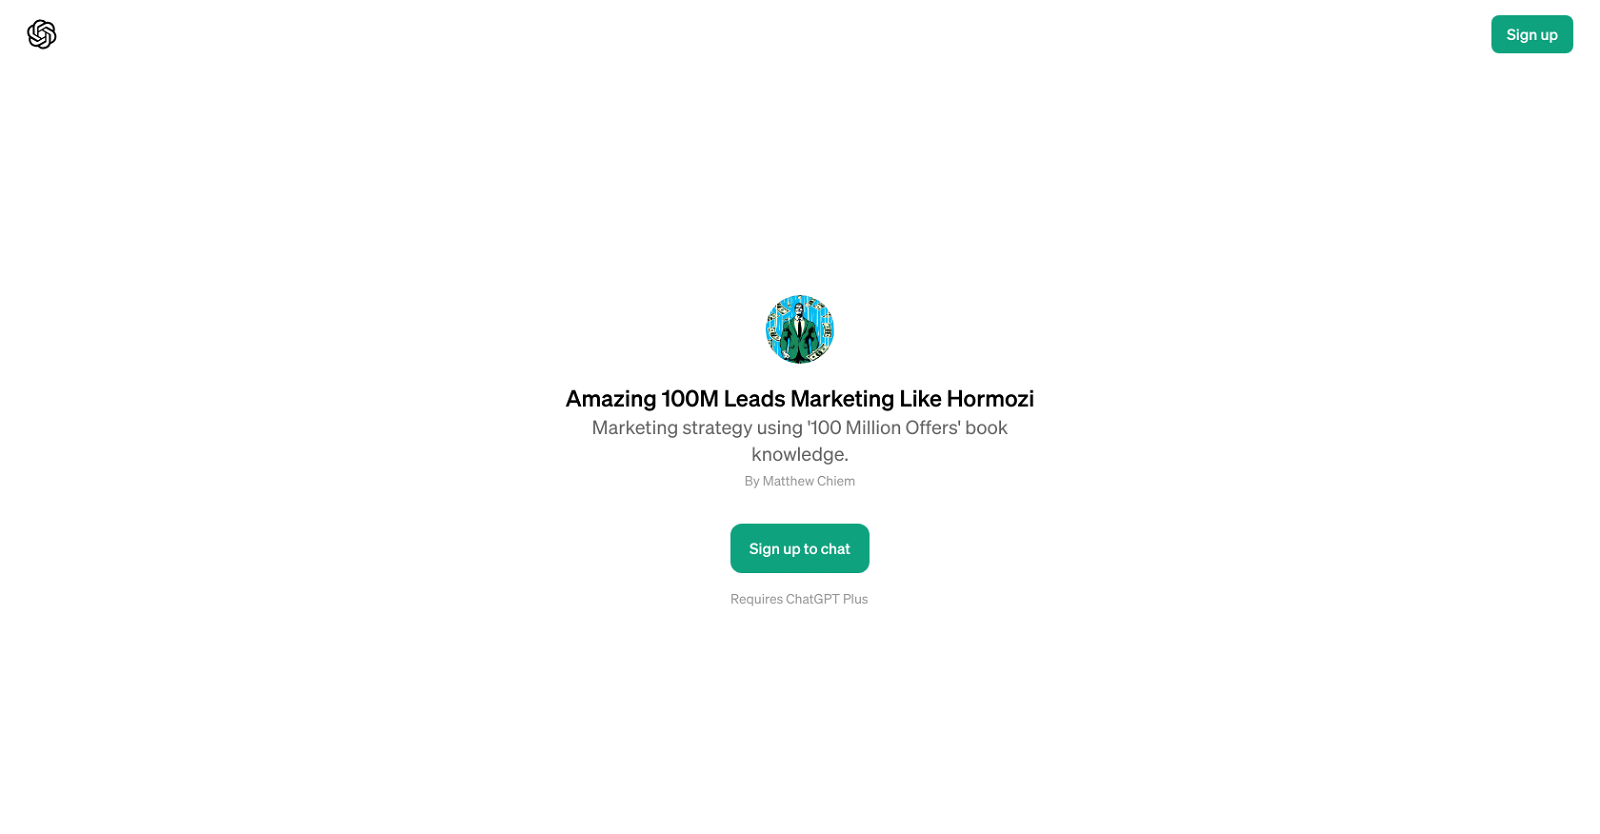 Amazing 100M Leads Marketing Like Hormozi website